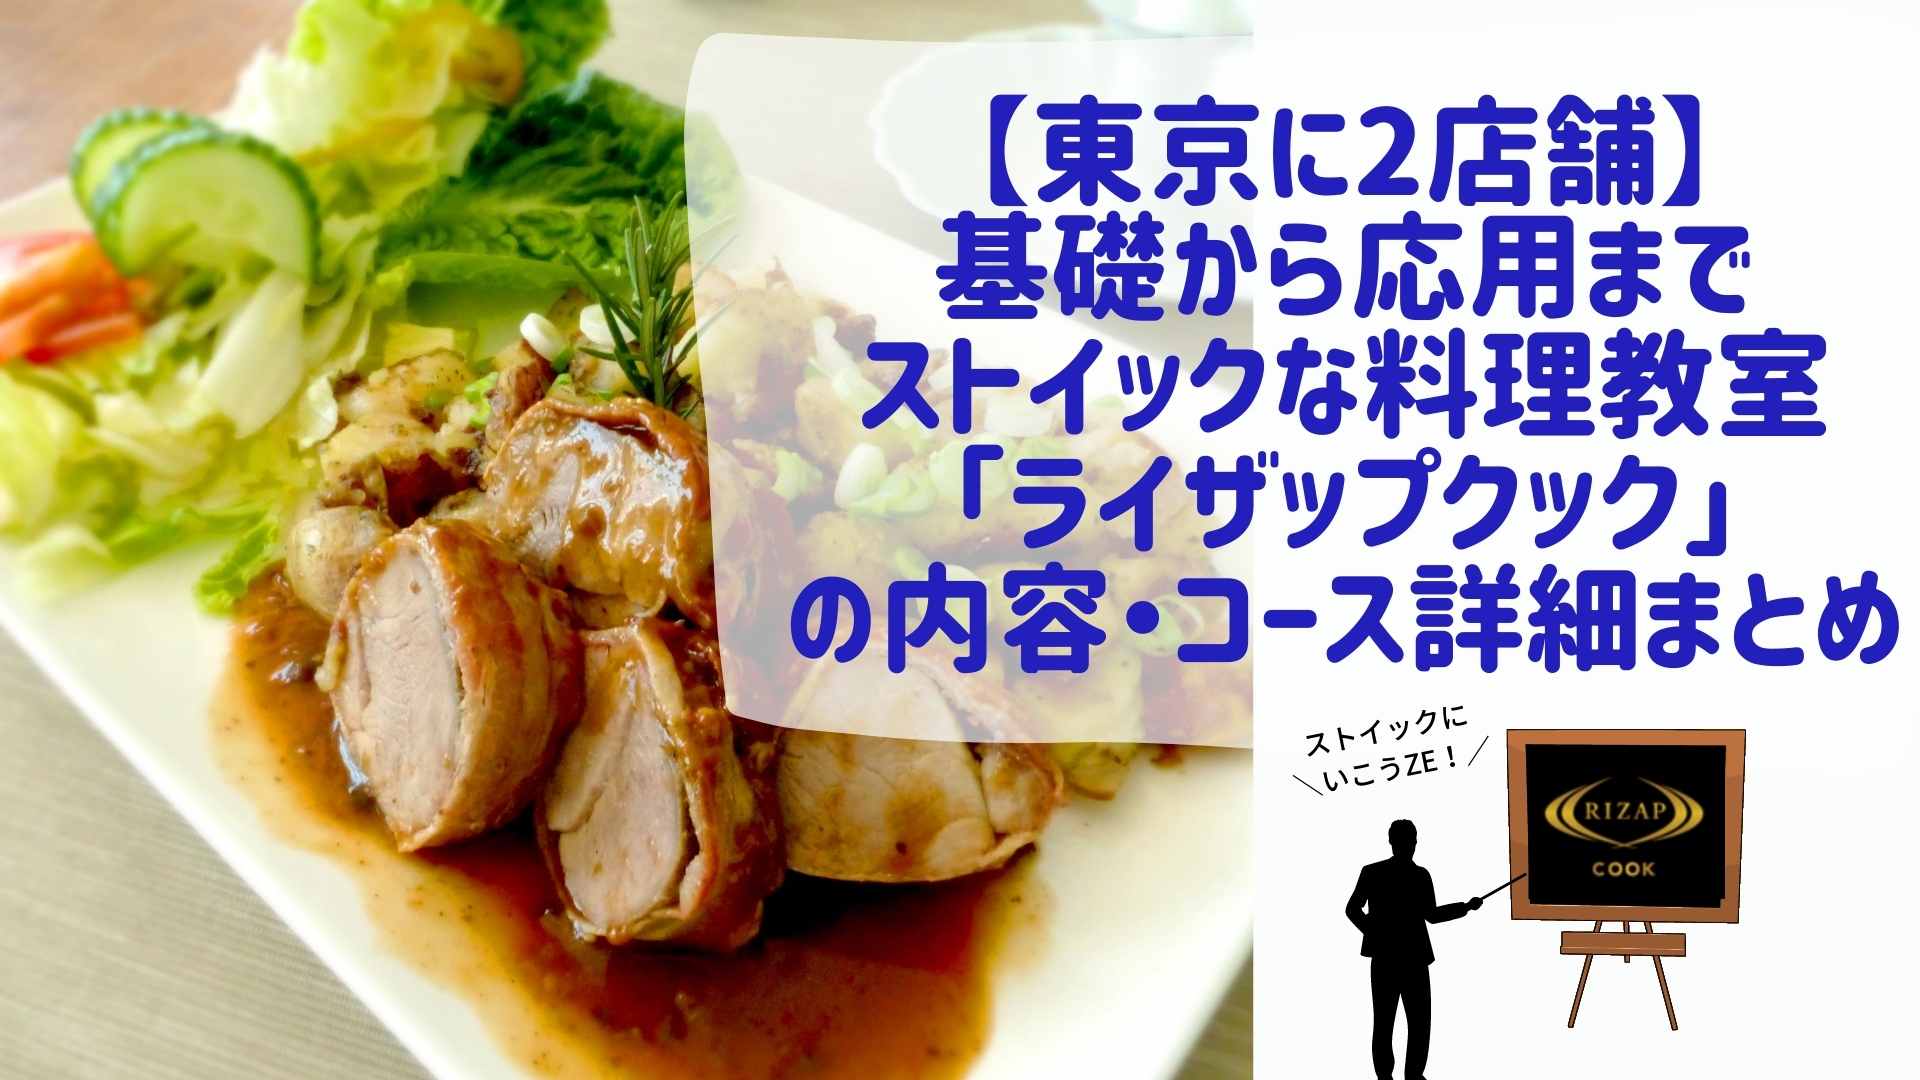 【東京に2店舗】基礎から応用までストイックな料理教室「ライザップクック」の内容・コース詳細まとめ